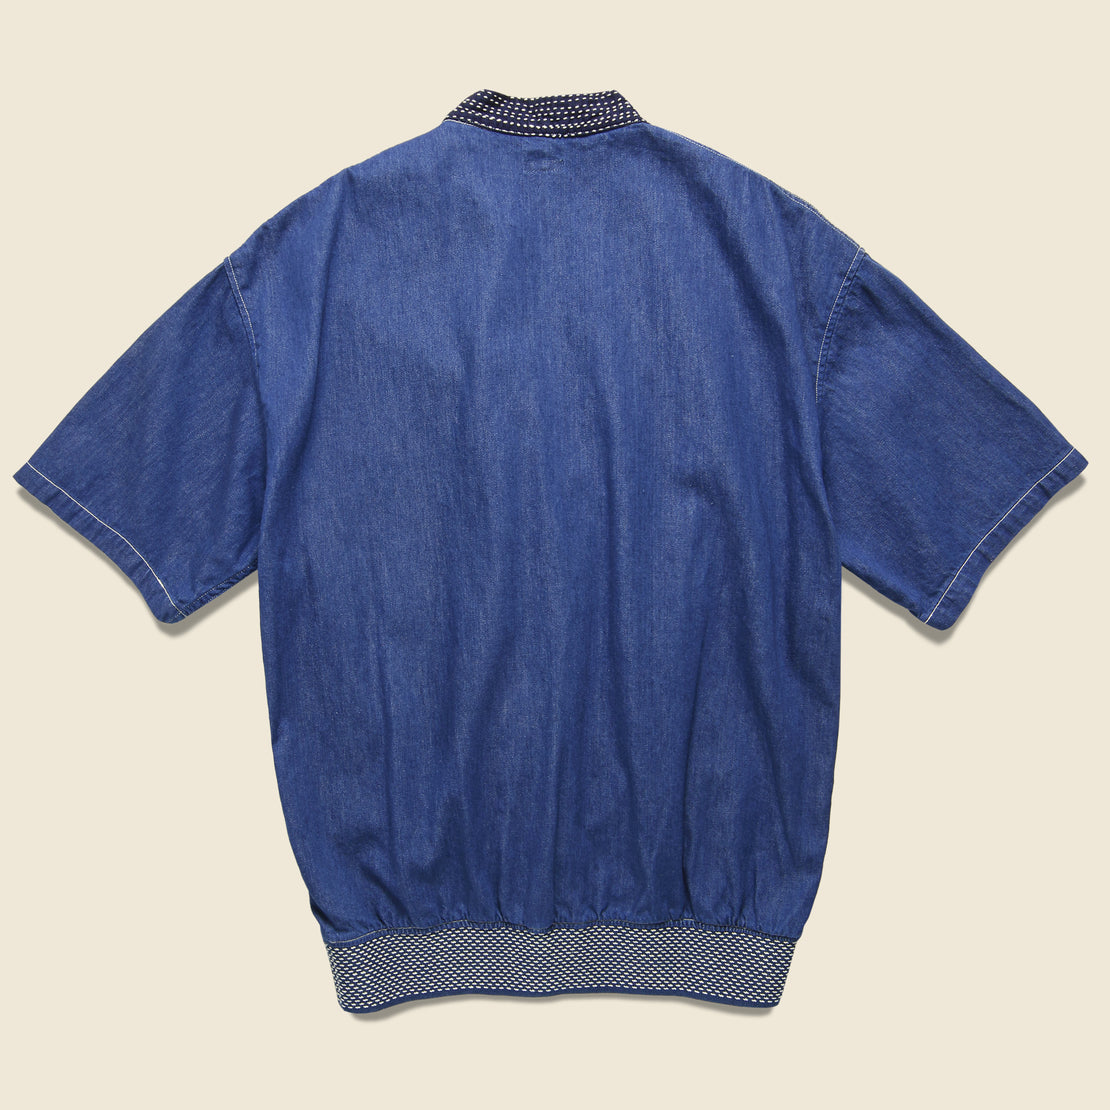 8oz Denim Makanai T-Shirt - Indigo - Kapital - STAG Provisions - W - Tops - S/S Knit